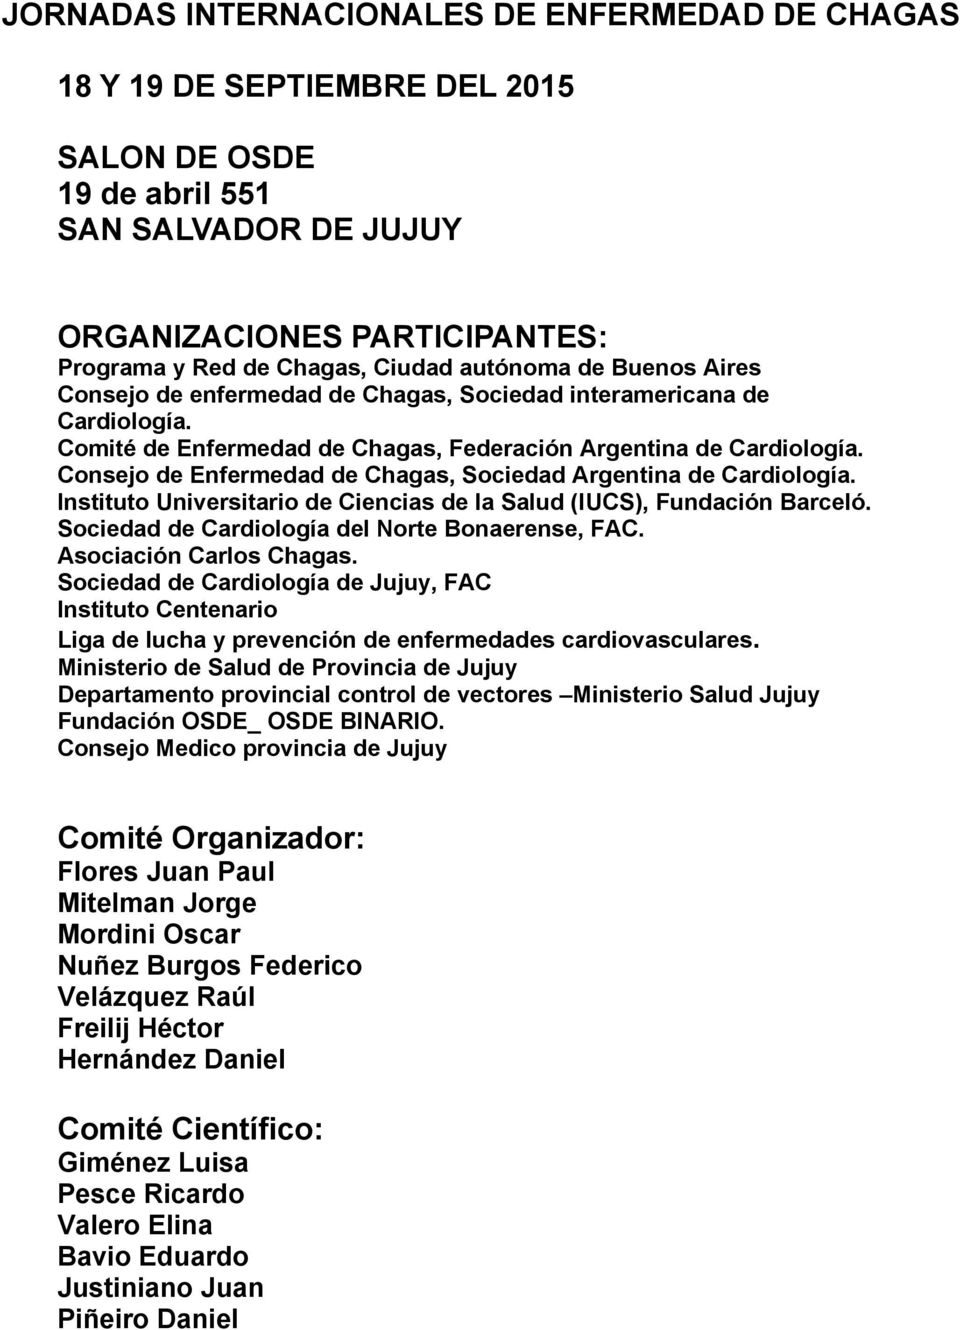 Consejo de Enfermedad de Chagas, Sociedad Argentina de Cardiología. Instituto Universitario de Ciencias de la Salud (IUCS), Fundación Barceló. Sociedad de Cardiología del Norte Bonaerense, FAC.